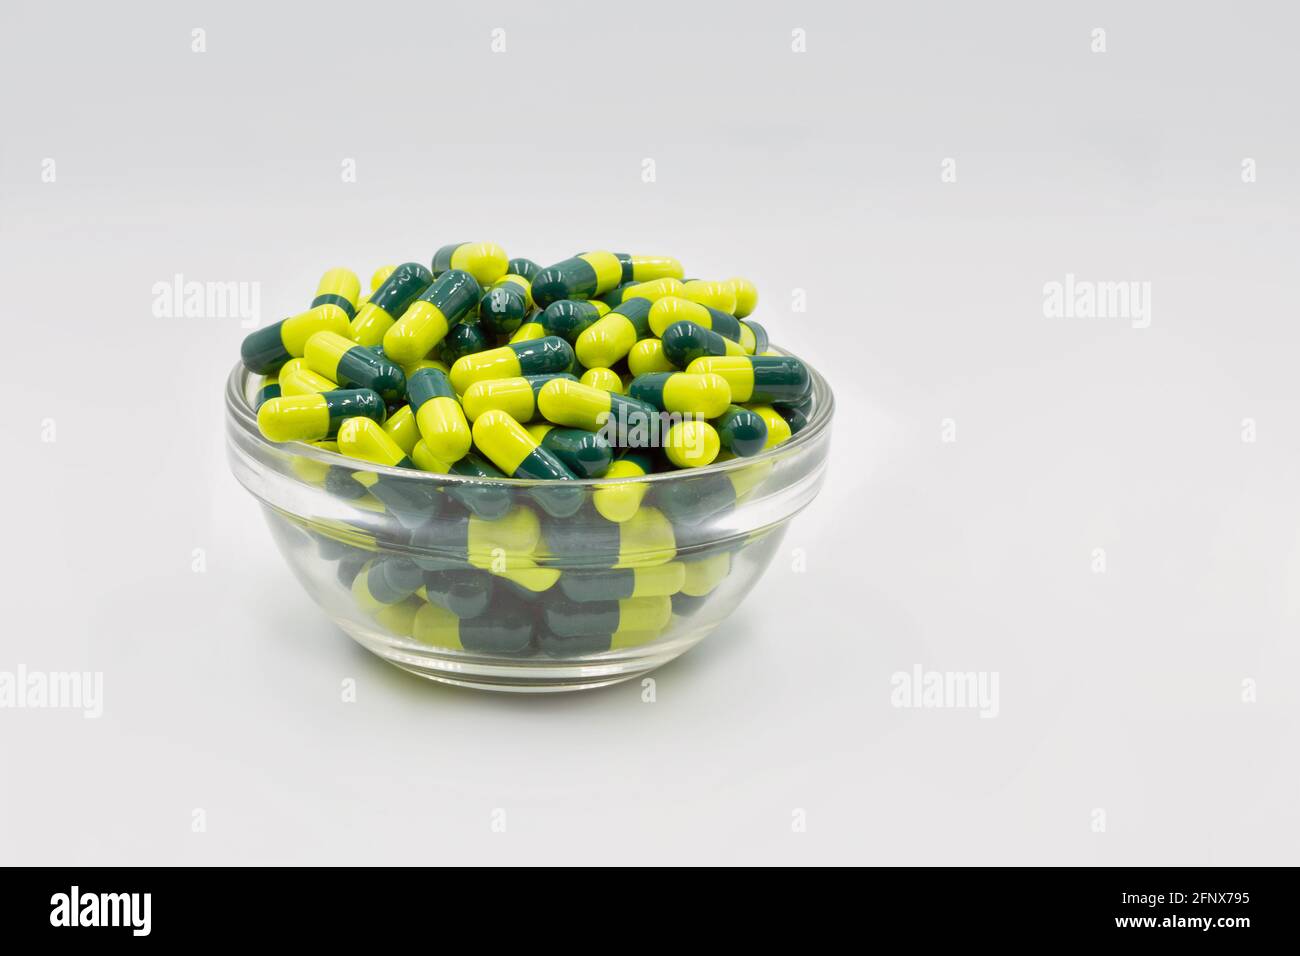 Medizinische Kapseln gelb grün in Glasschale Nahaufnahme gegen weiß Hintergrund Stockfoto